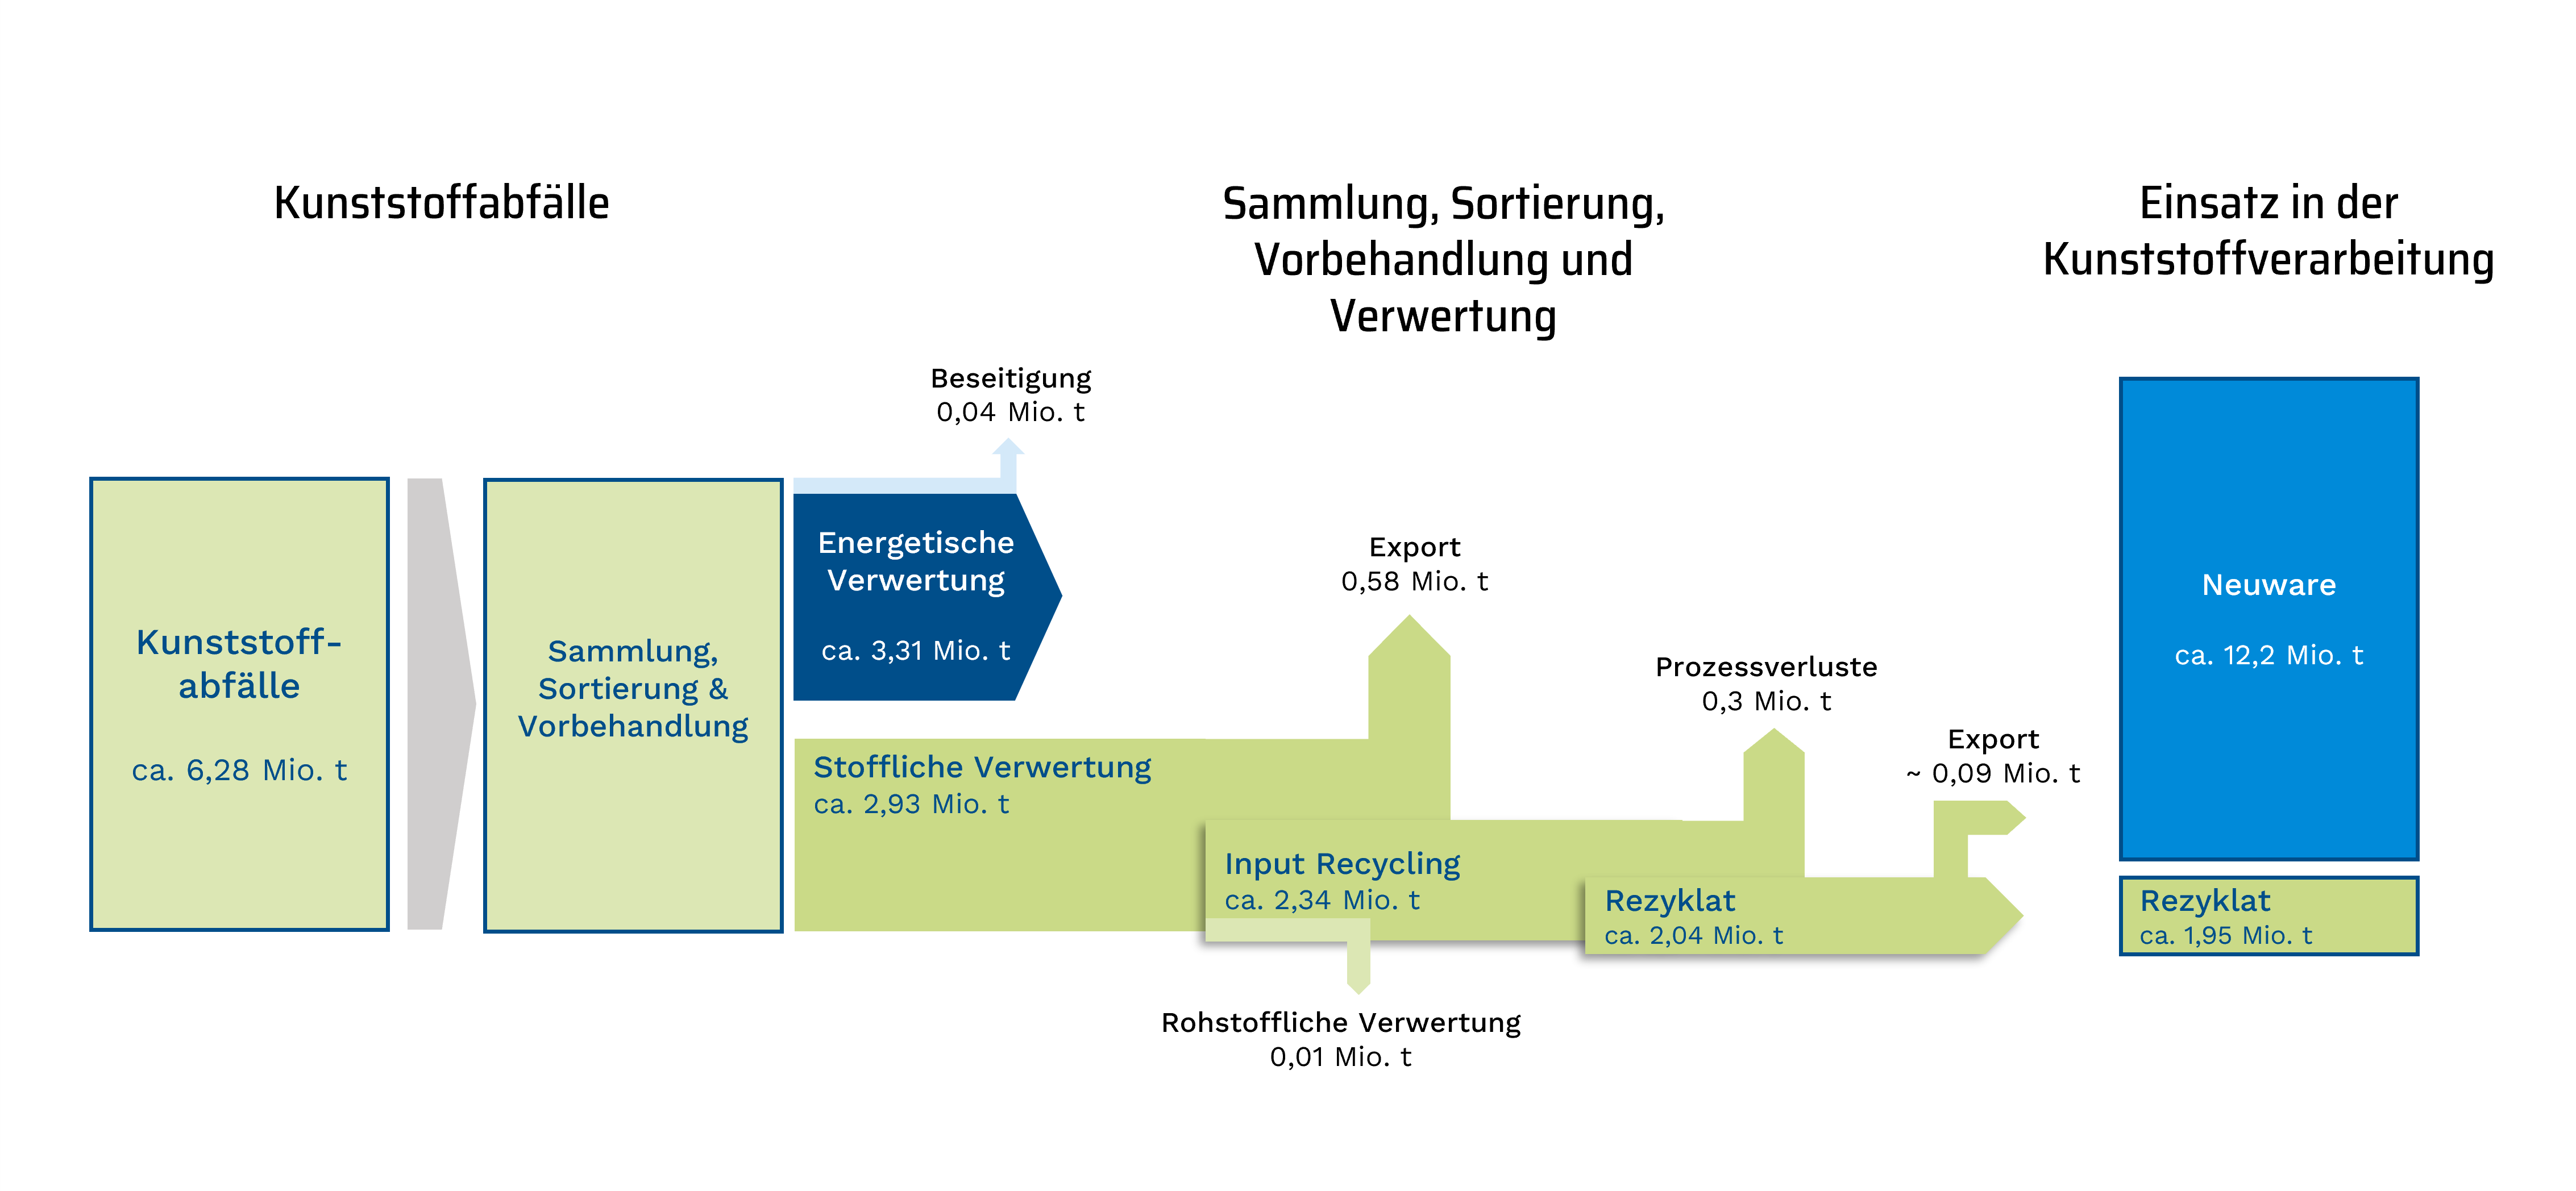 Das Bild zeigt ein Sankey-Diagramm zu den Kunststoffstromflüssen in Deutschland auf Basis von Daten aus dem Jahr 2019. Die Abbildung ist der Kurzfassung der Conversion Studie - Stoffstrombild Kunststoffe in Deutschland 2019, Seite 11 entnommen und wurde adaptiert.